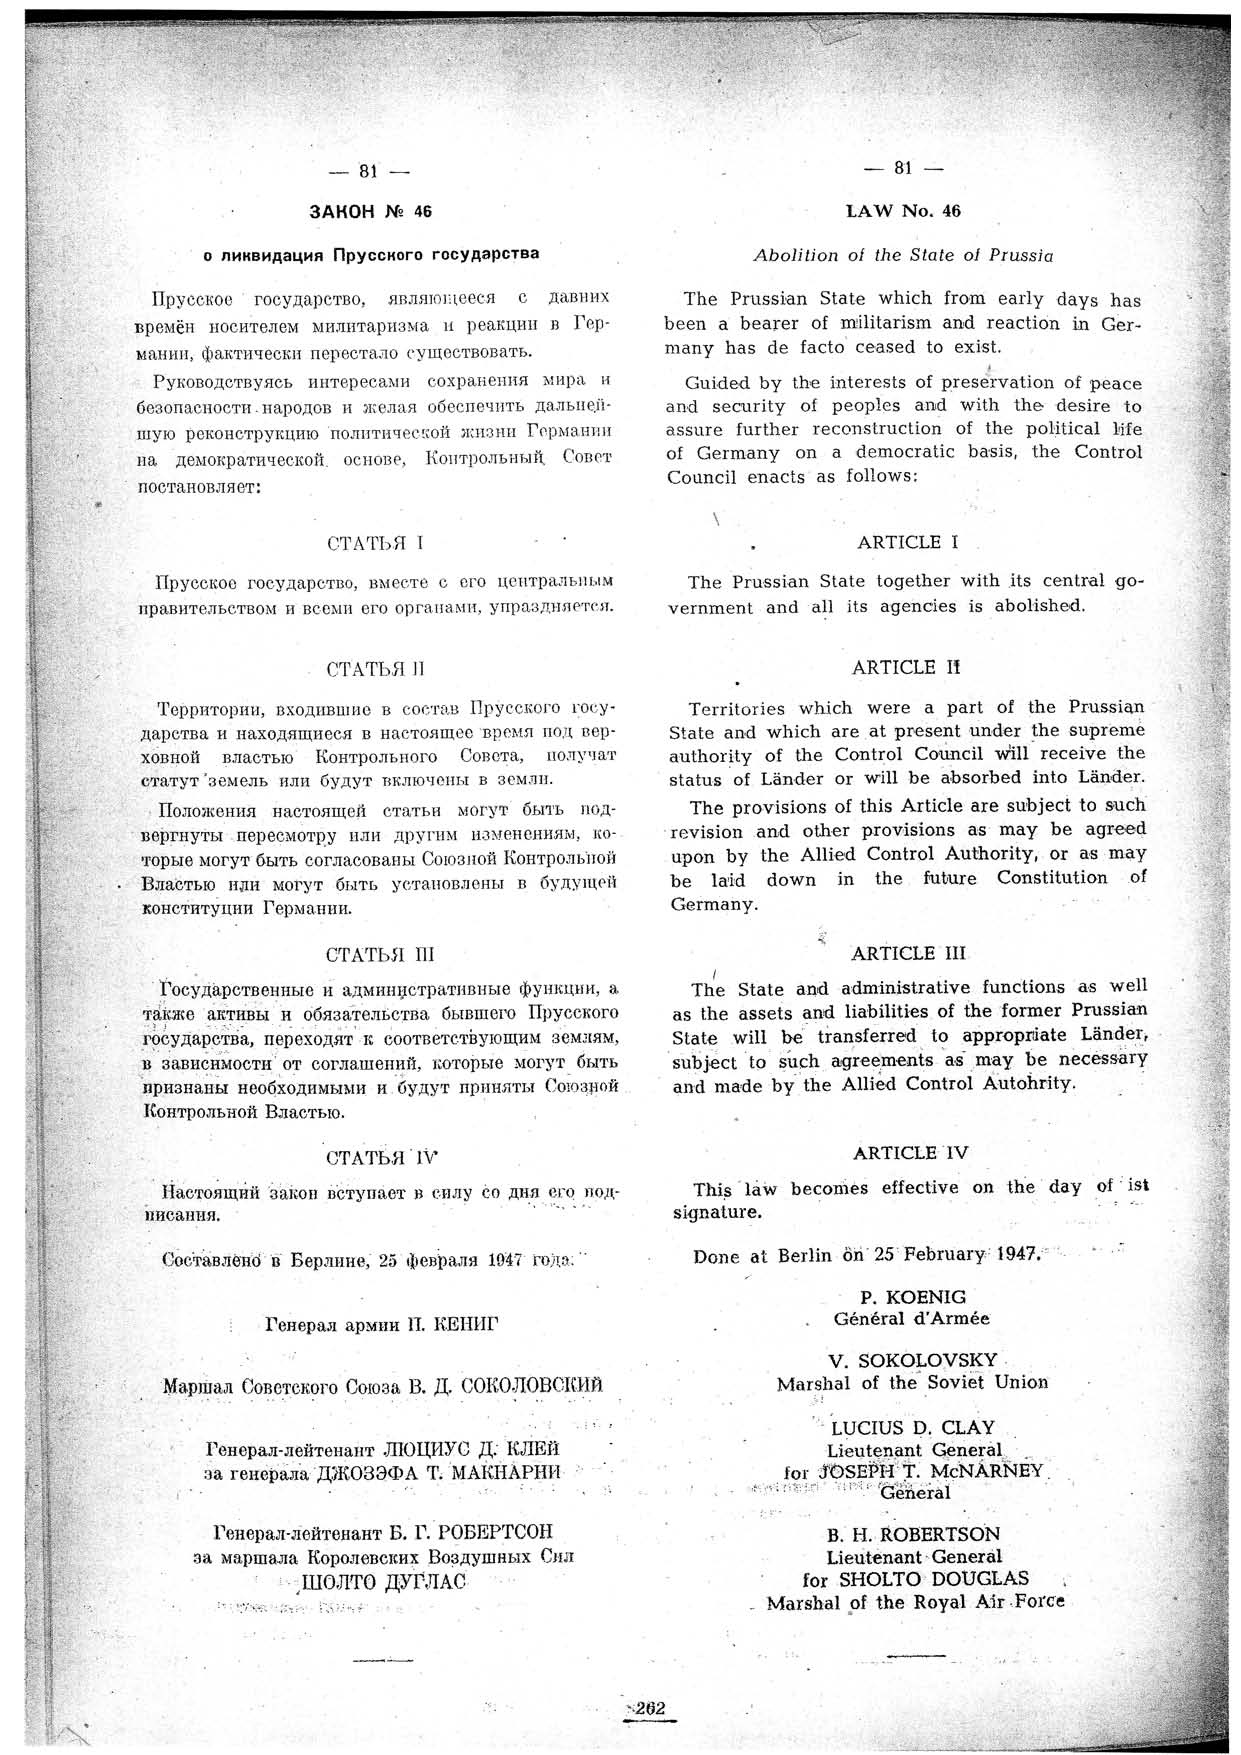 Gesetz Nr. 46 des Alliierten Kontrollrates in Deutschland über die Auflösung des Staates Preußen